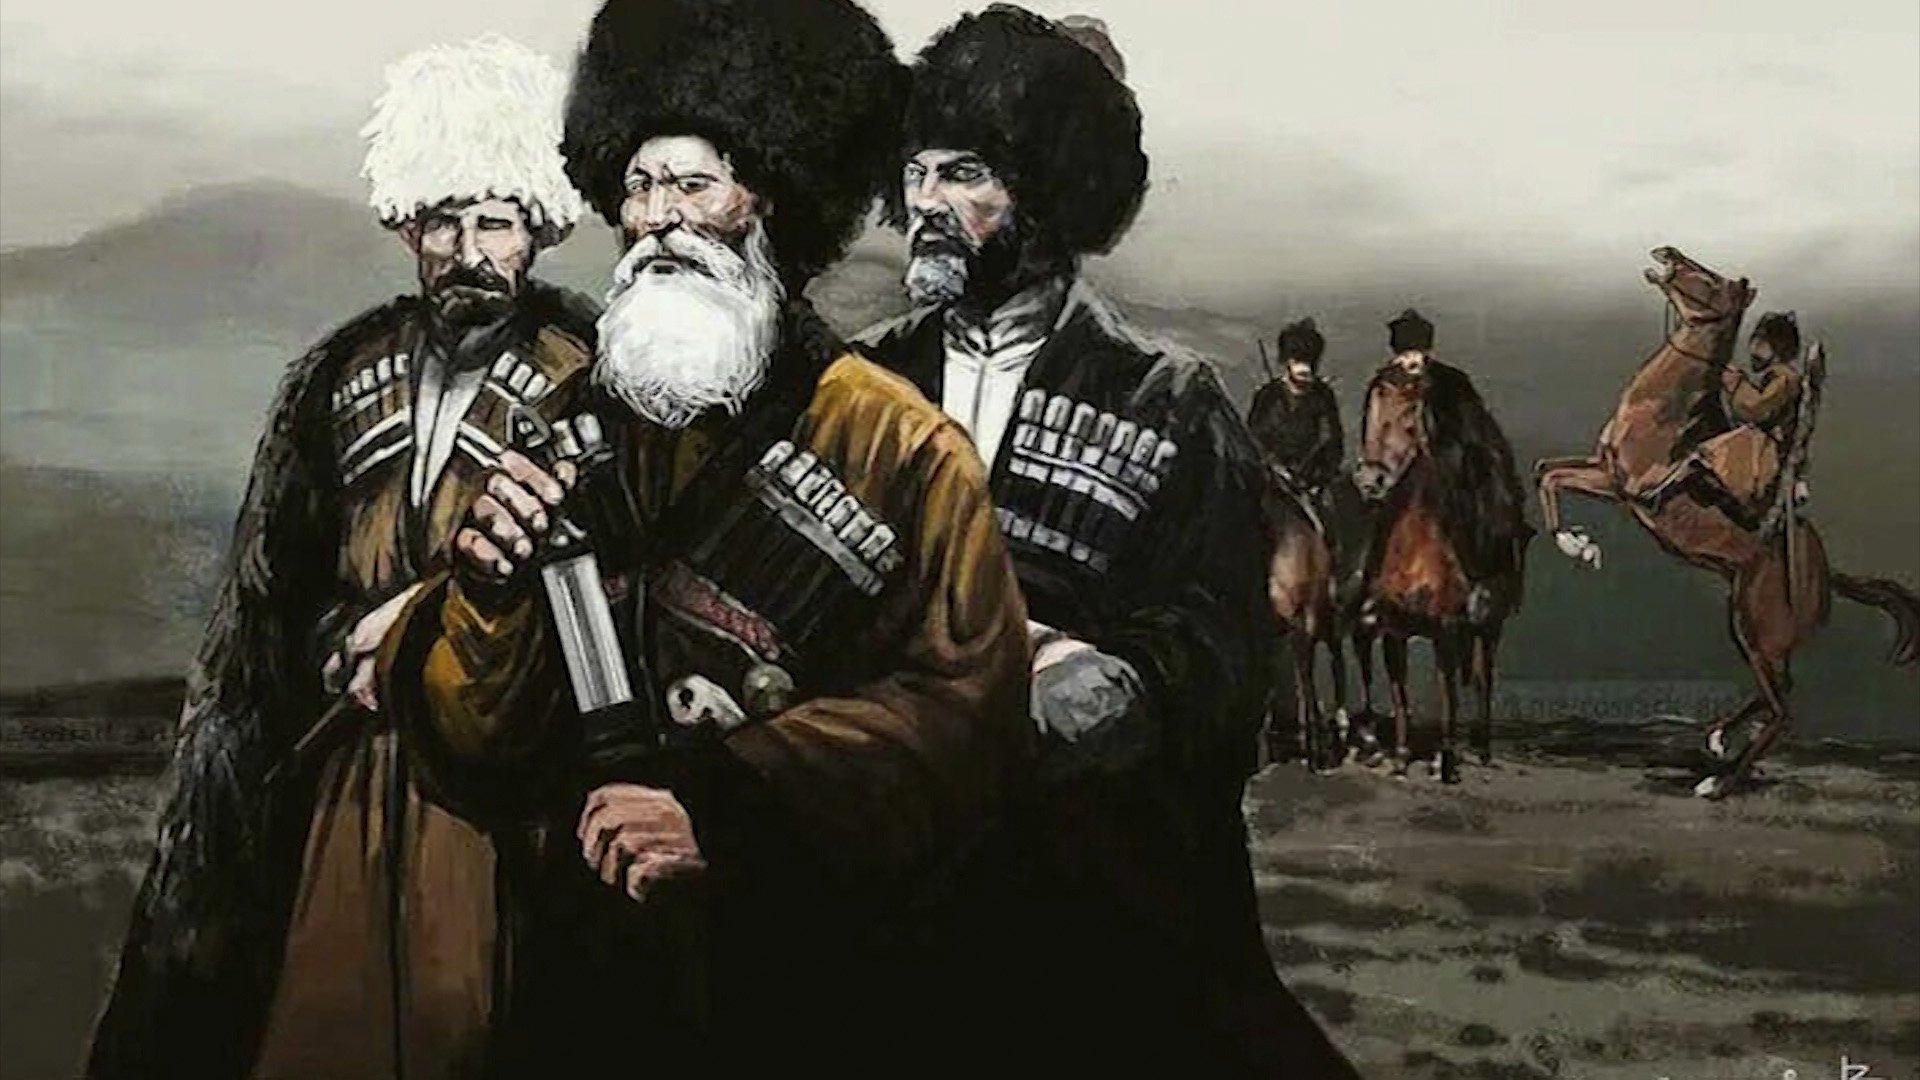 Товарищи встречи продавщицы горцы молодцы. Кунаки казаки. Горцы Дагестана 19 век.